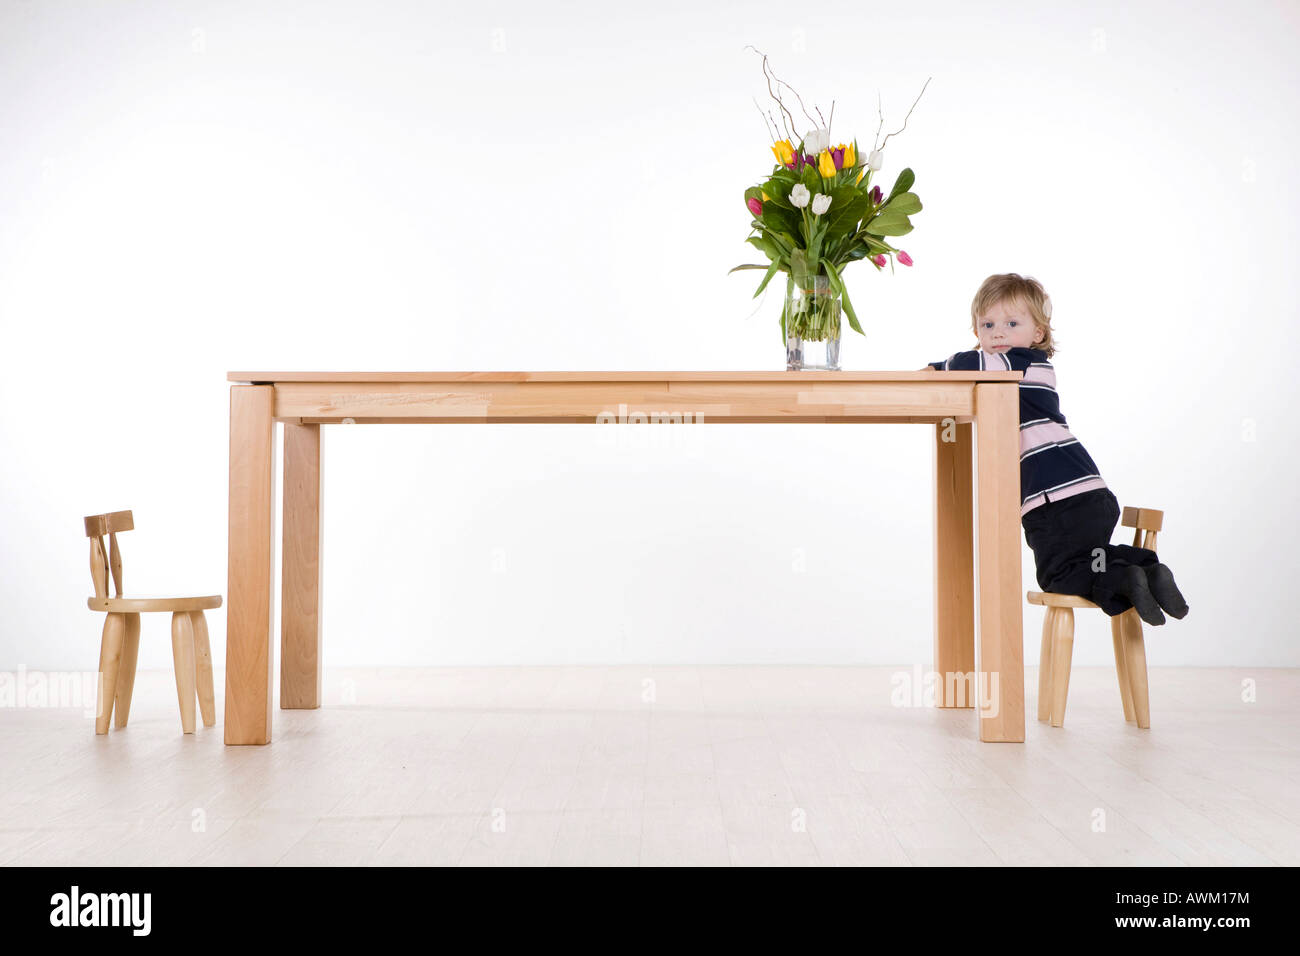 Boy, climbing on a table Stock Photo